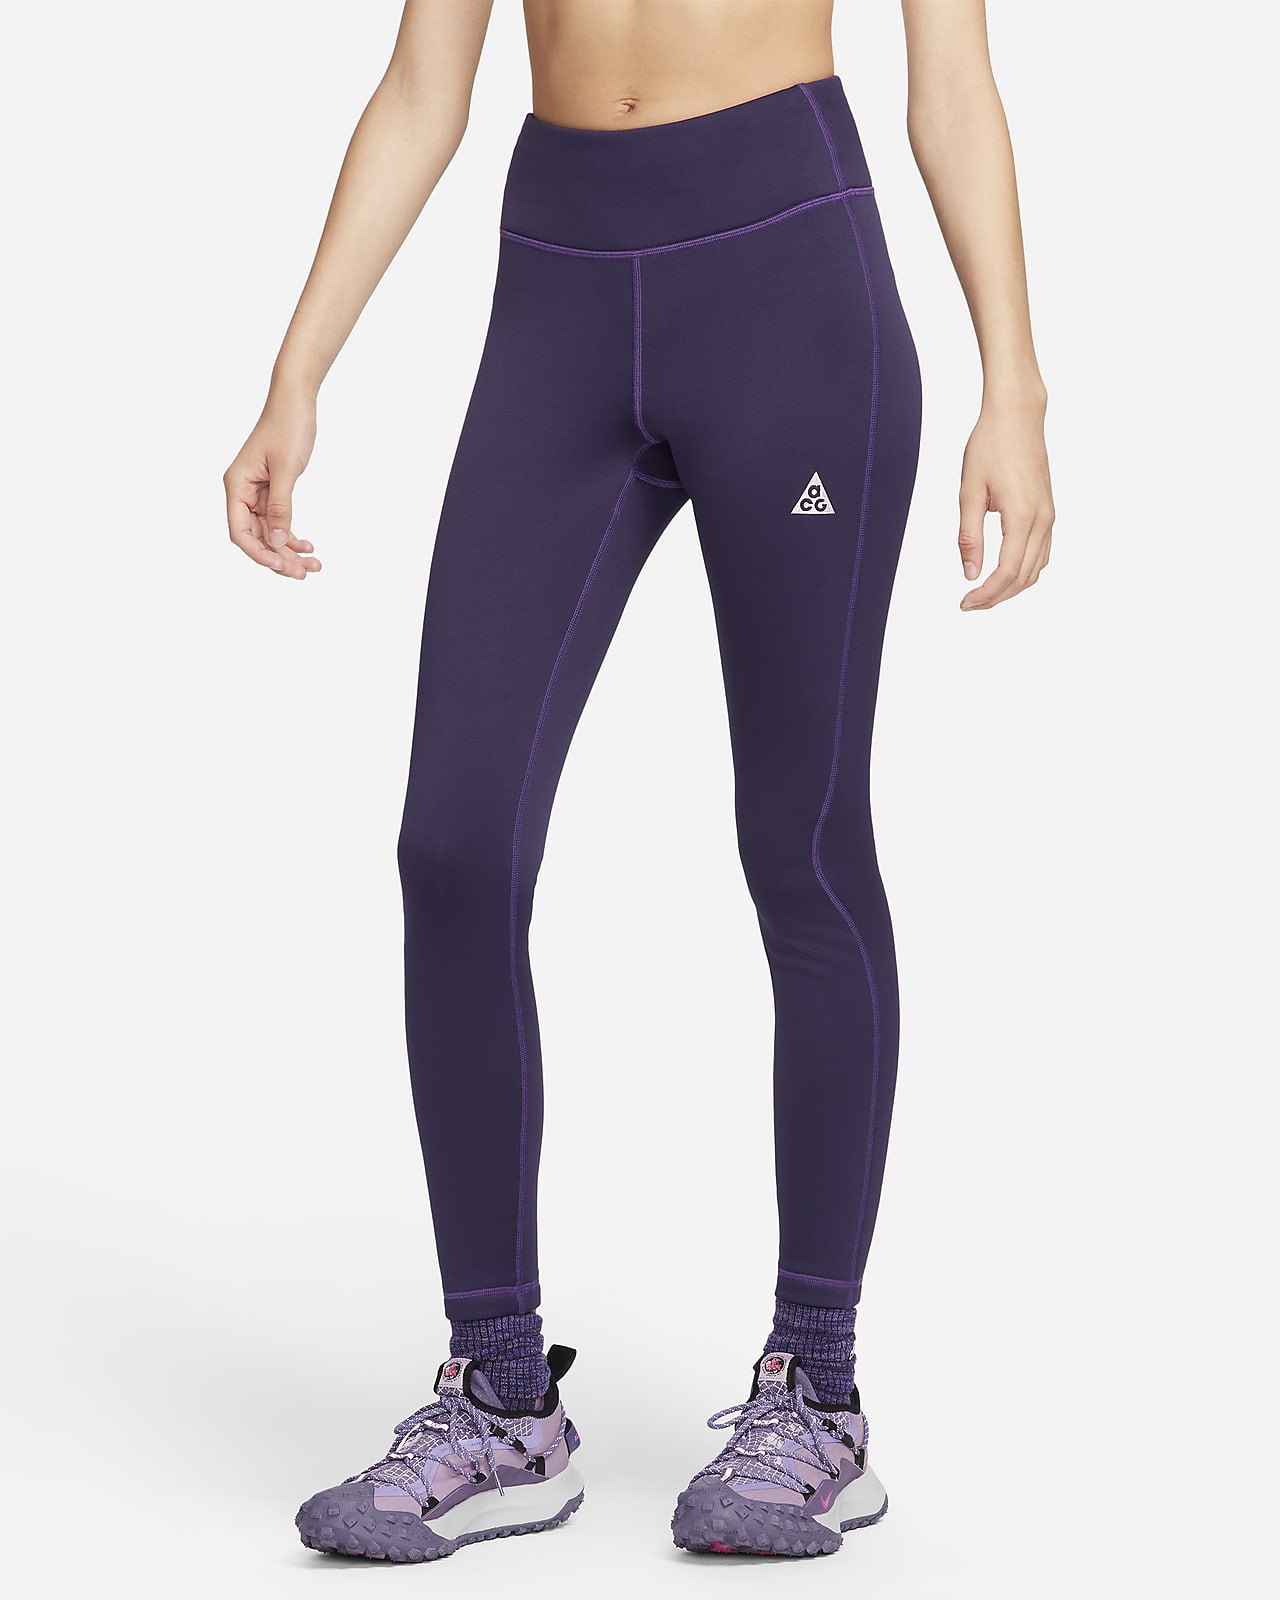 Shop Nike Yoga Trousers & Leggings: Premium Comfort